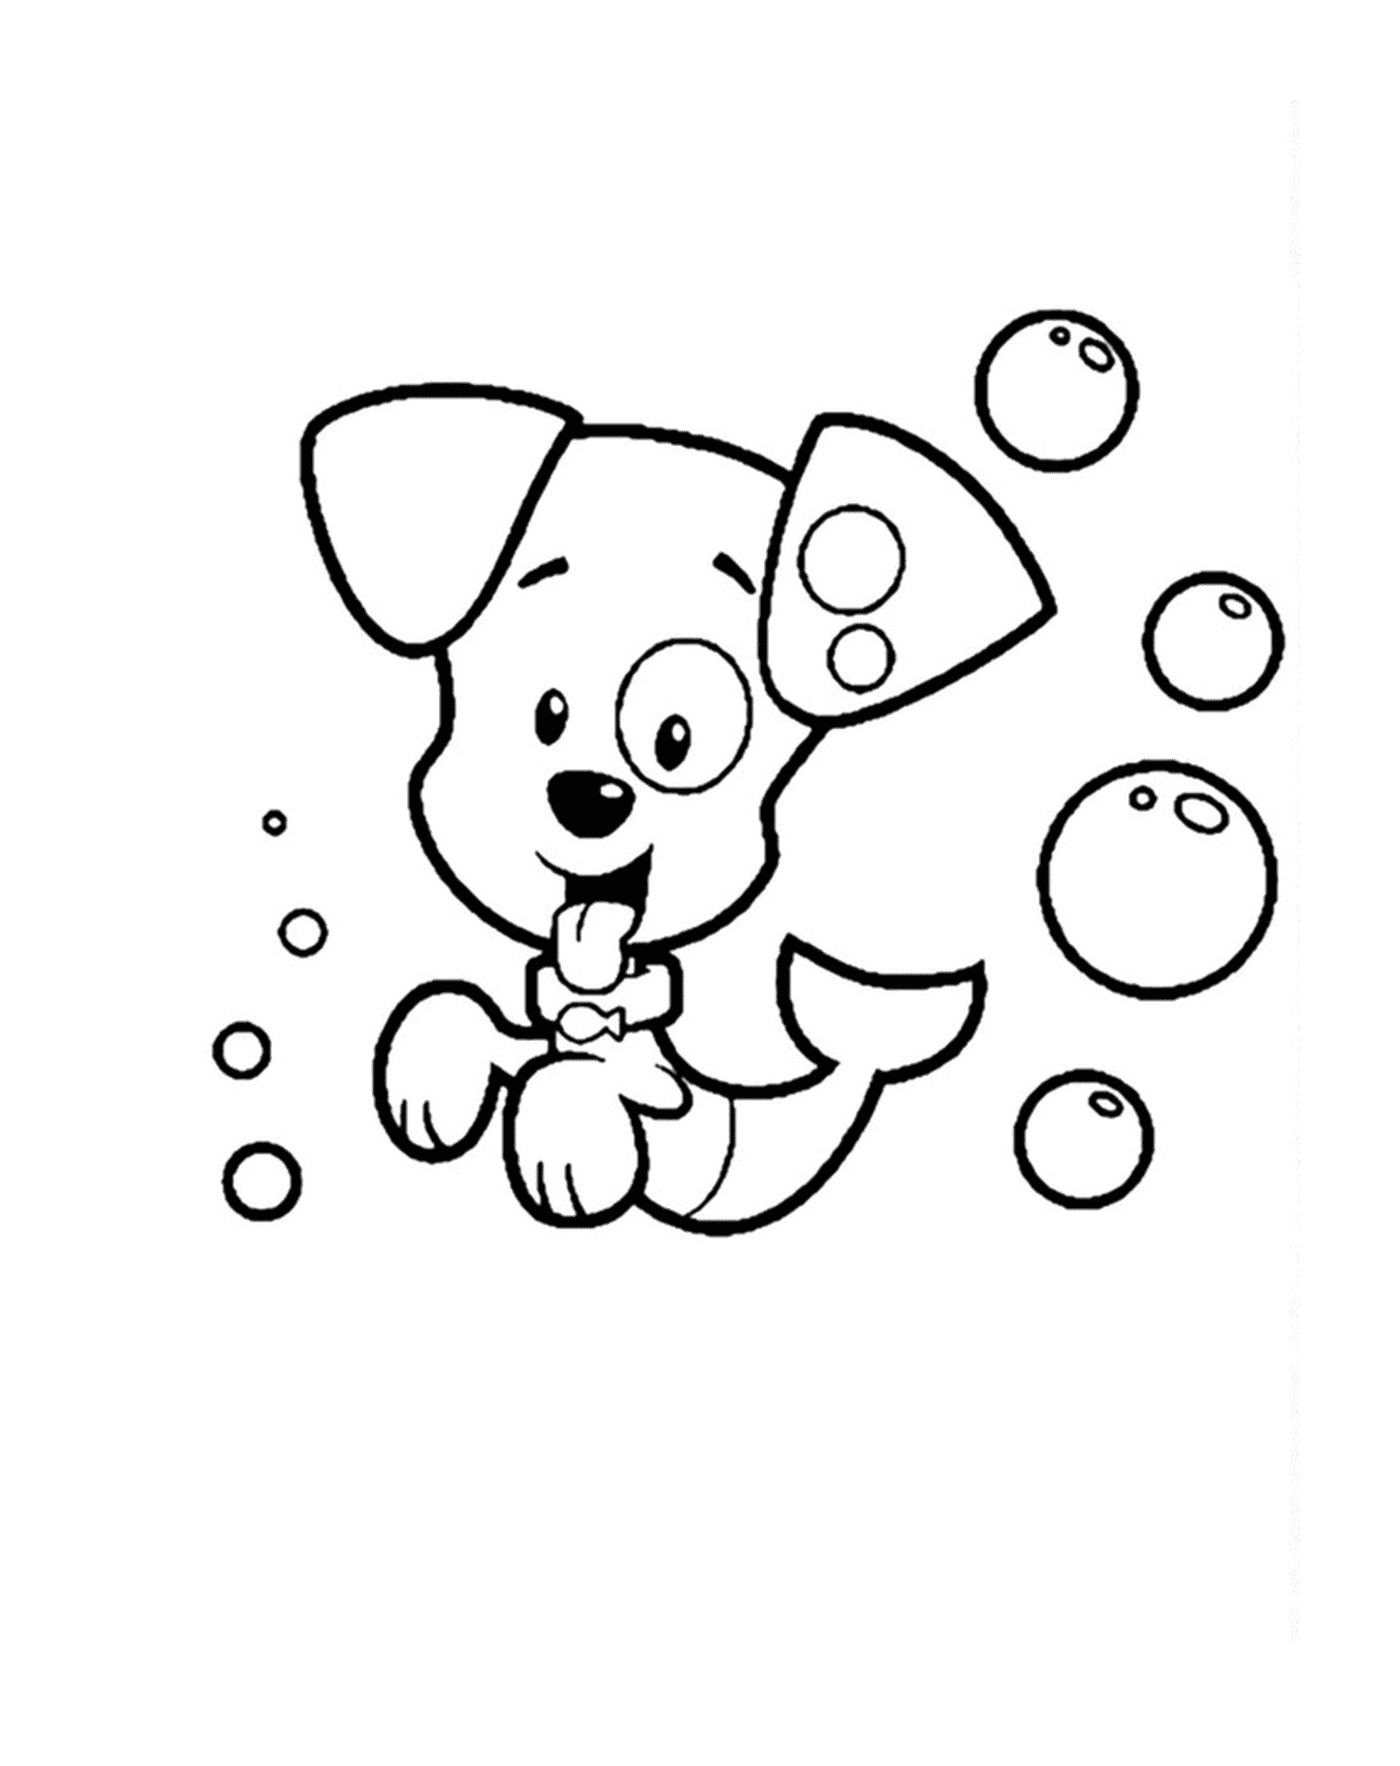  Um cão cercado por bolhas 